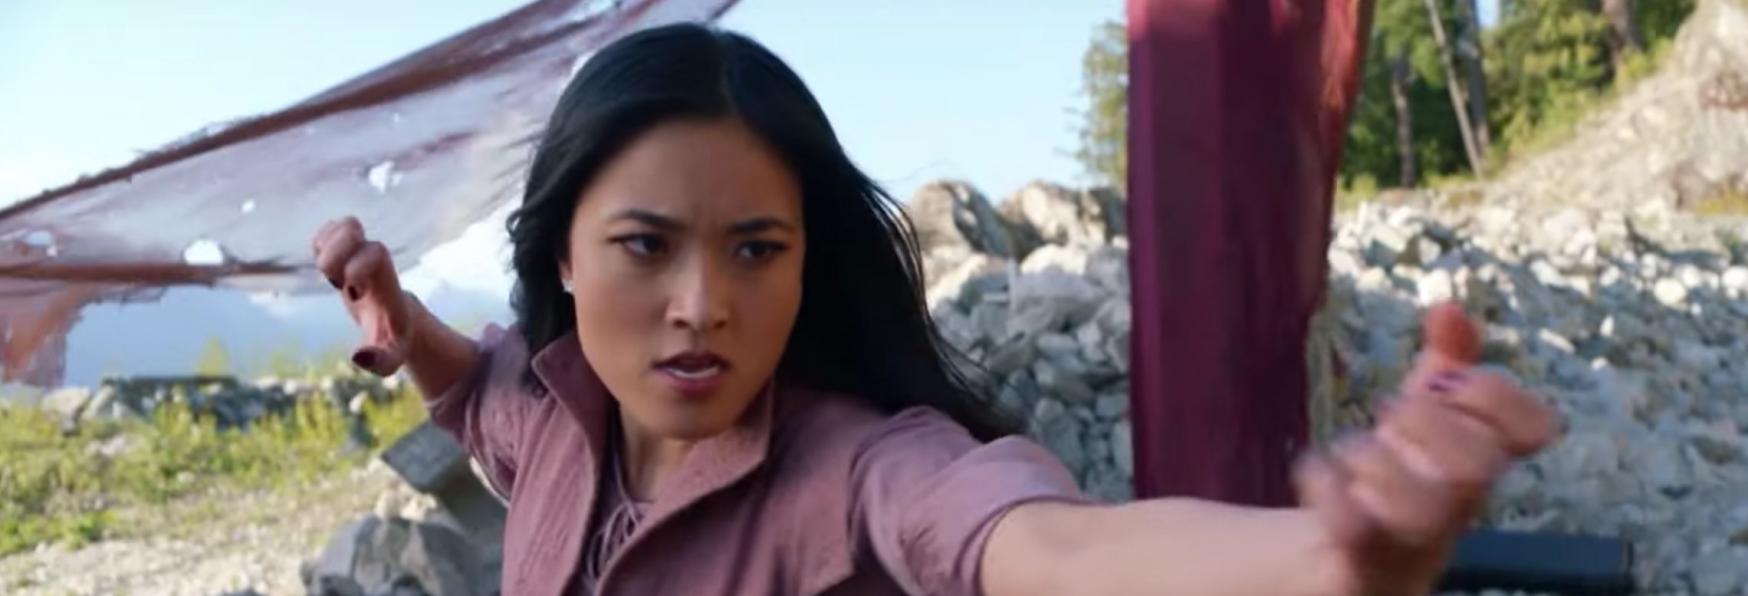 Kung Fu 2: The CW rilascia il Trailer della nuova Stagione, in arrivo a Marzo